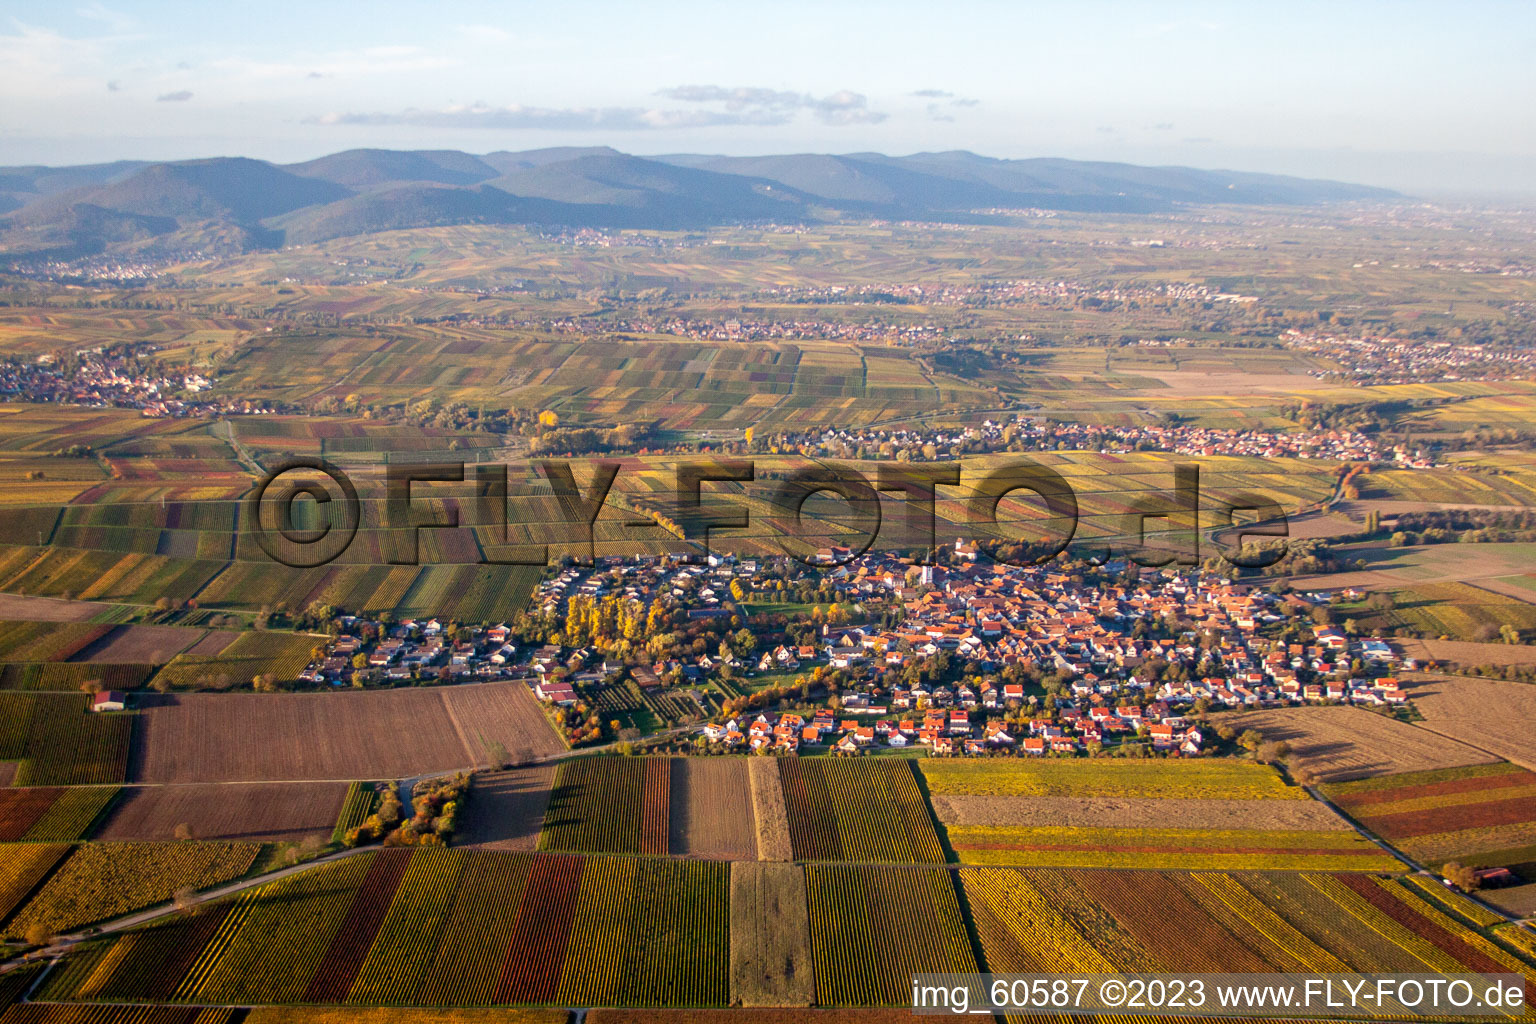 Drone image of District Mörzheim in Landau in der Pfalz in the state Rhineland-Palatinate, Germany